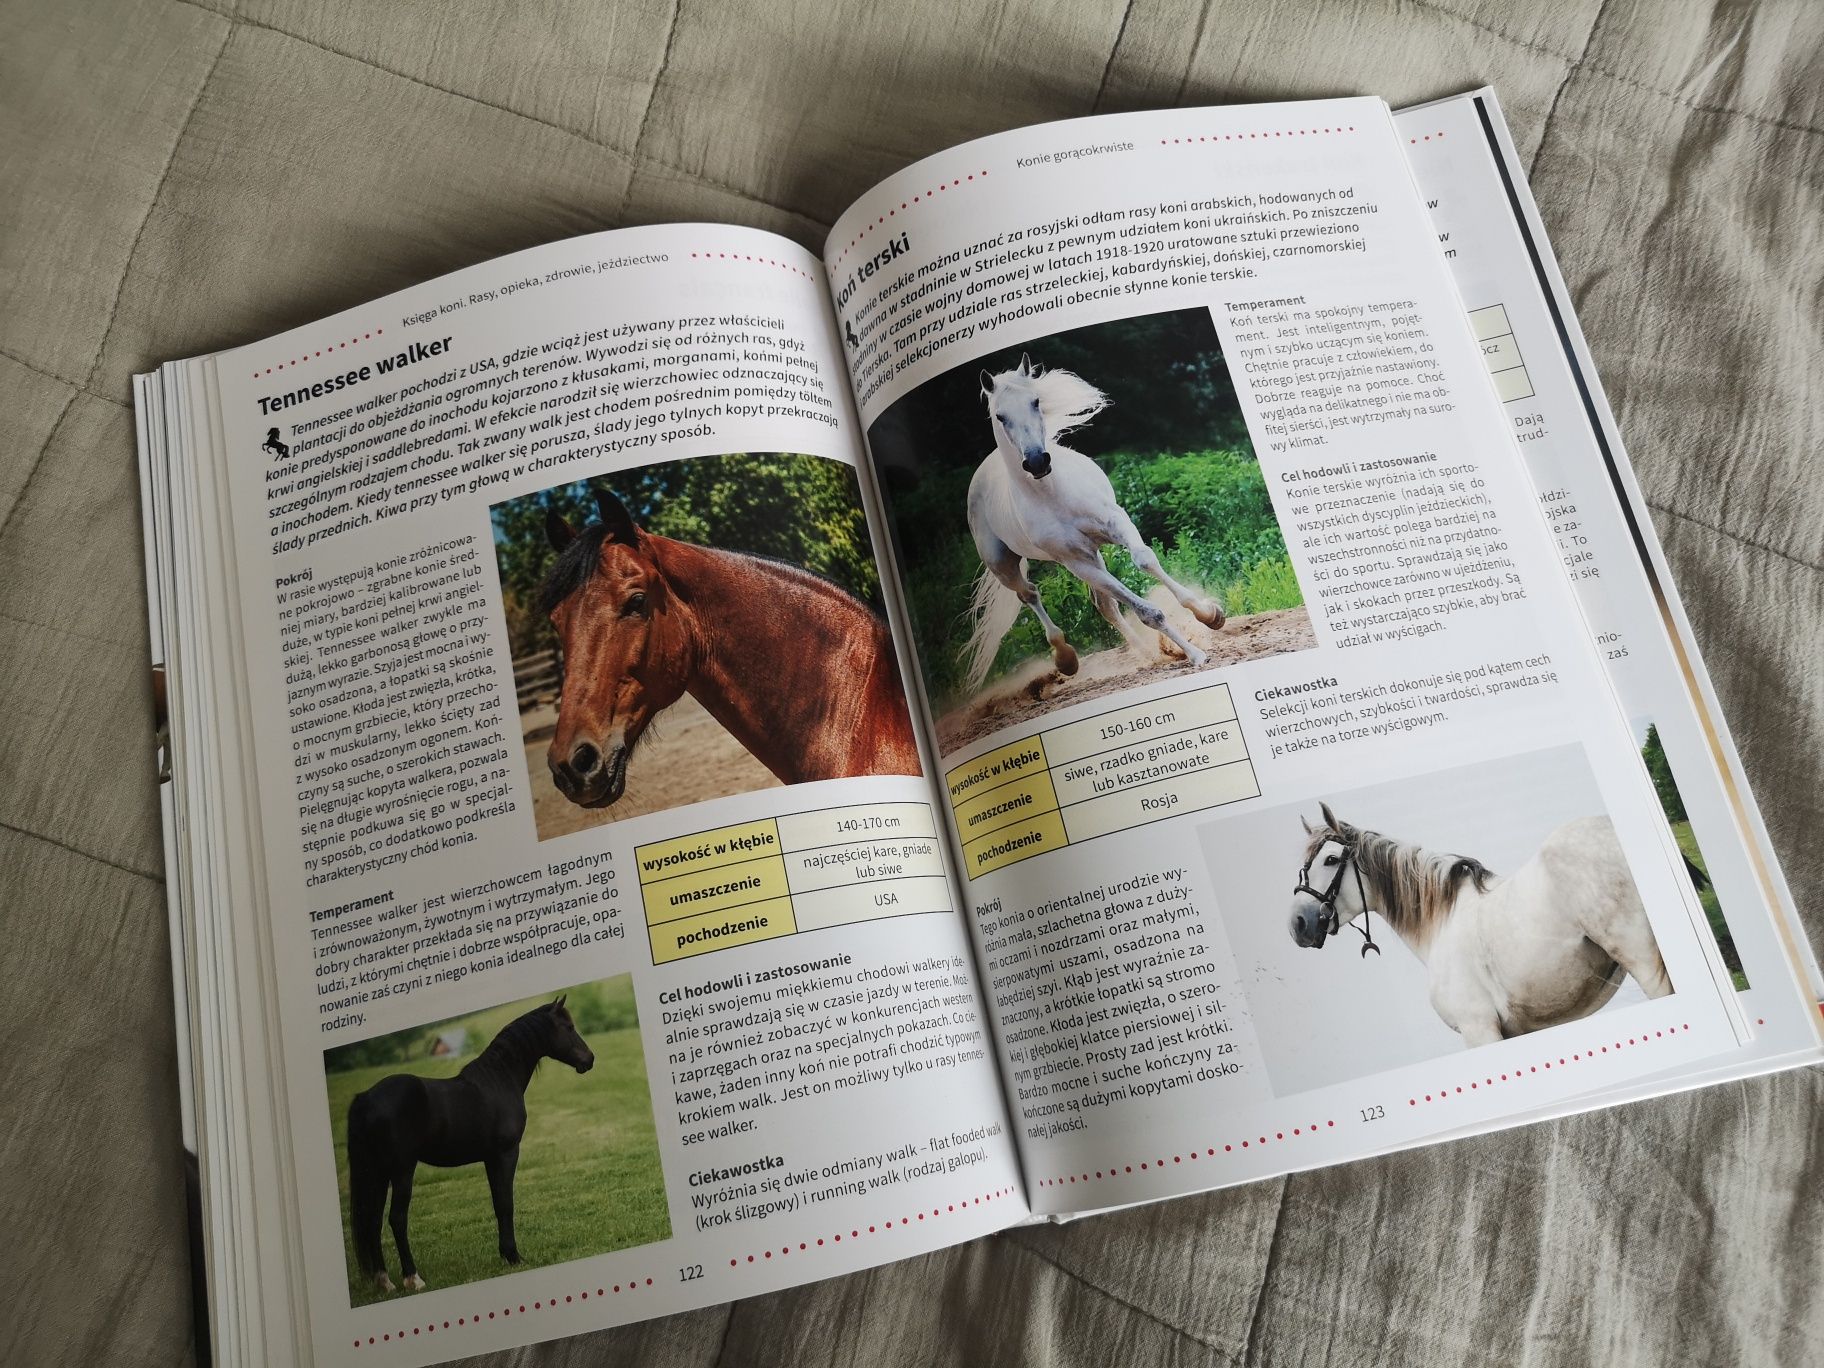 Dwie książki - "Konie", "Księga koni".